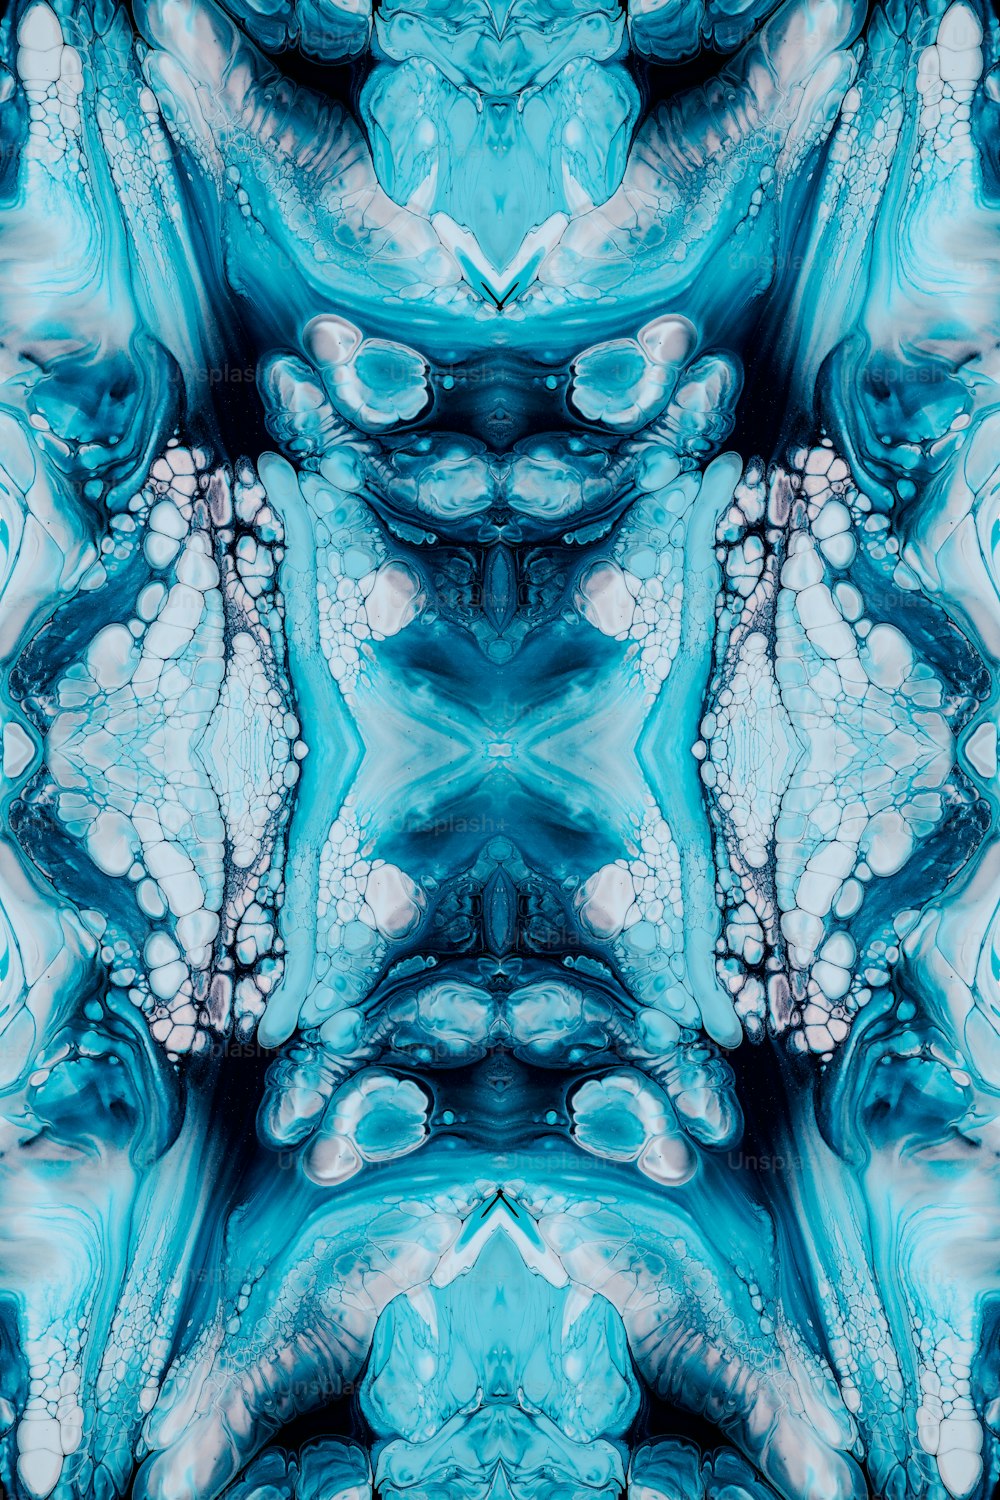 Un patrón azul y blanco con una gran cantidad de burbujas